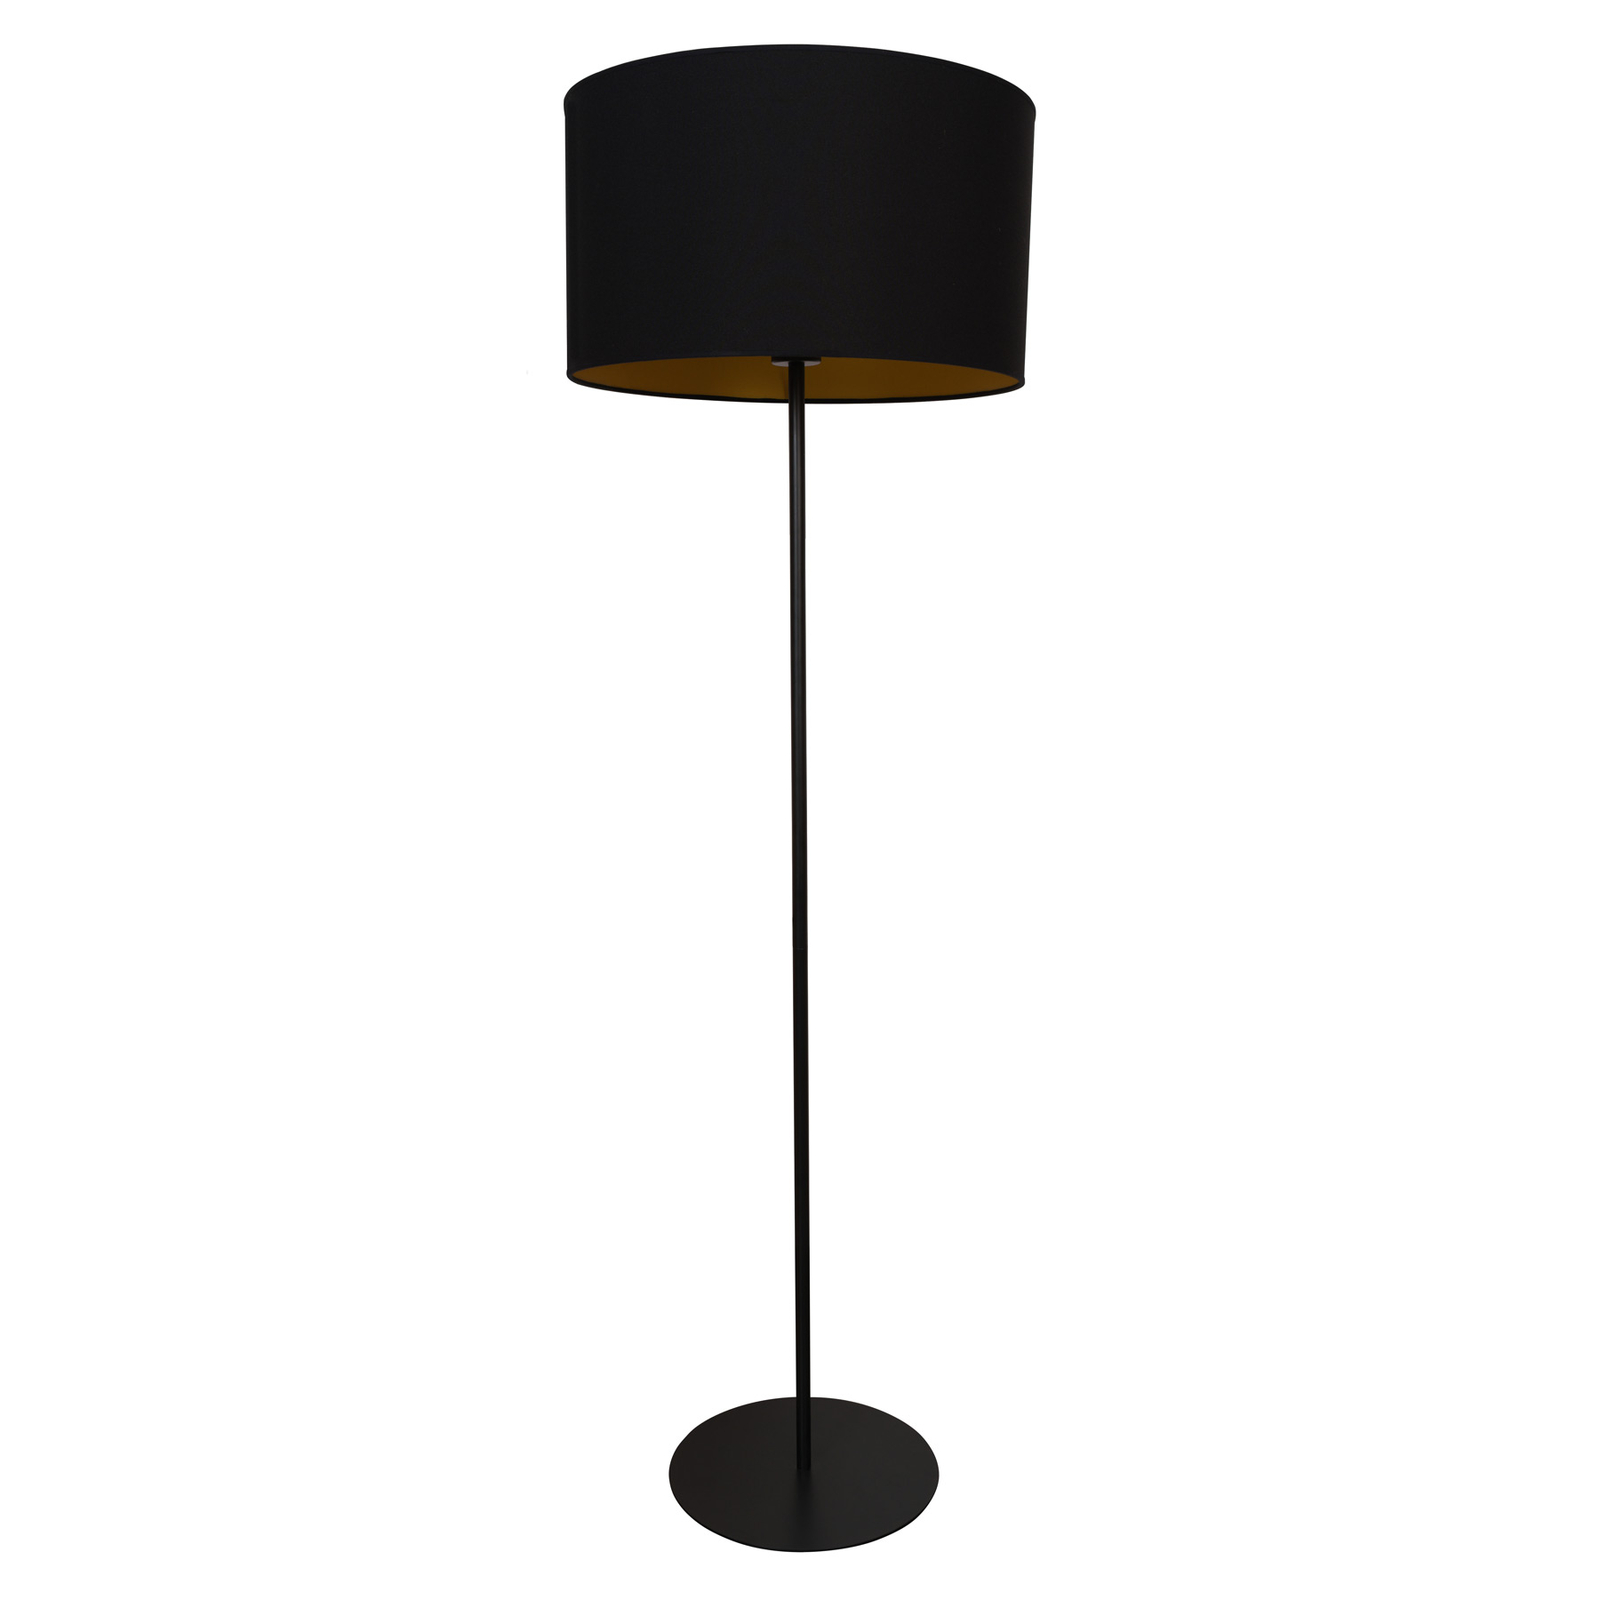 Roller álló lámpa, fekete/arany, 145 cm magas